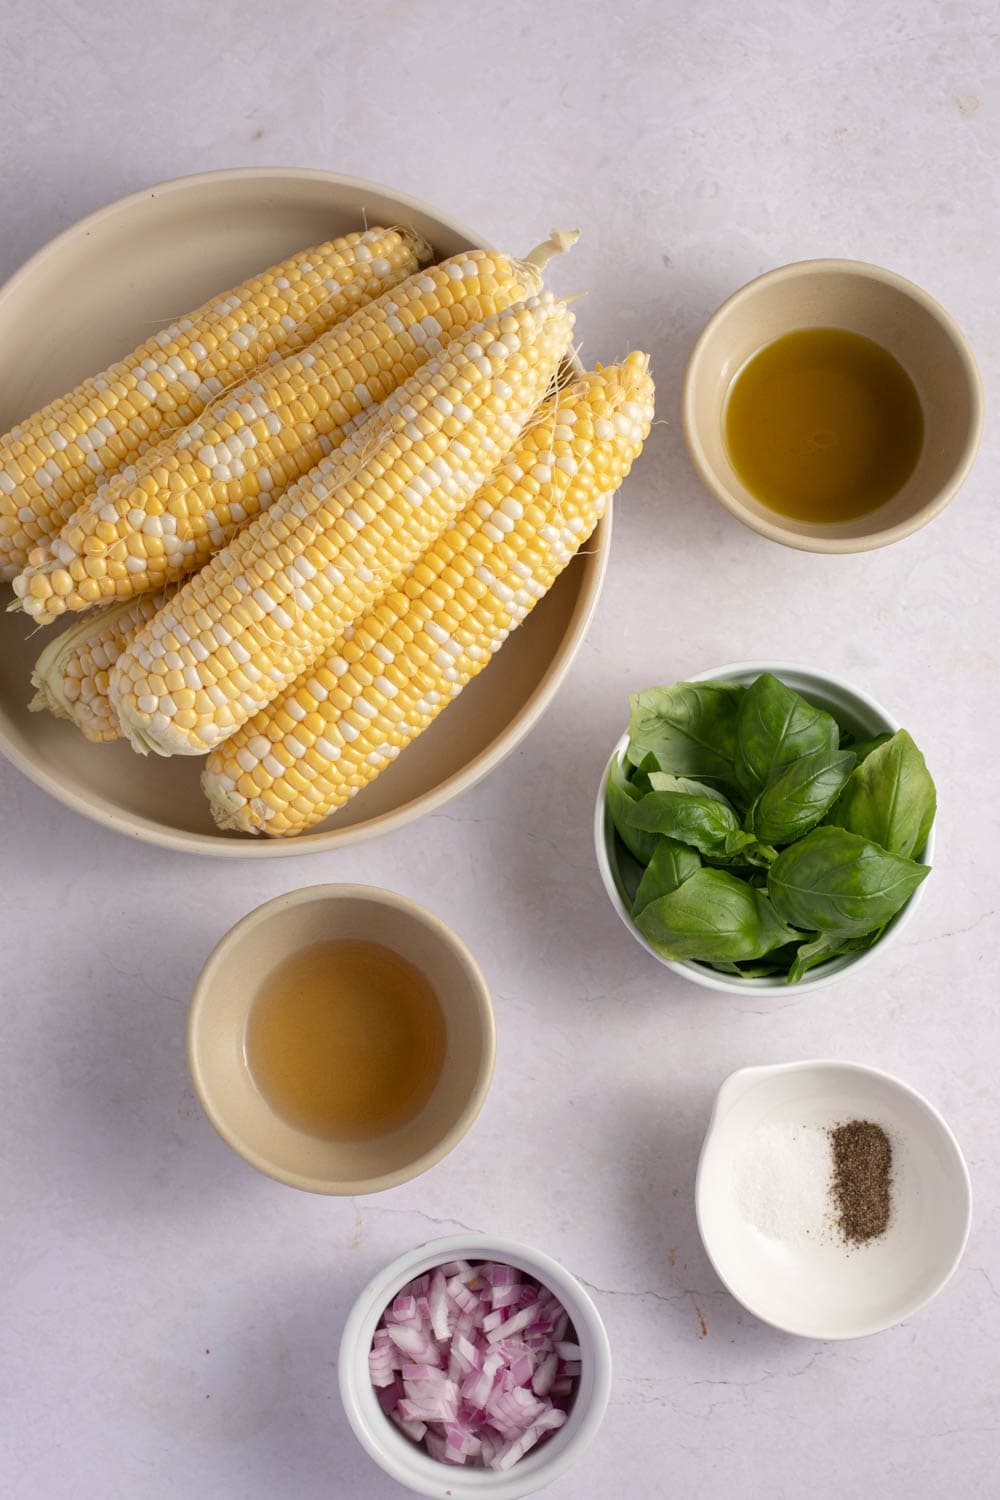 Ina Garten Corn Salad Ingredients - Corn, Red Onion, Cider Vinegar, Olive Oil, Salt, Pepper and Basil Leaves